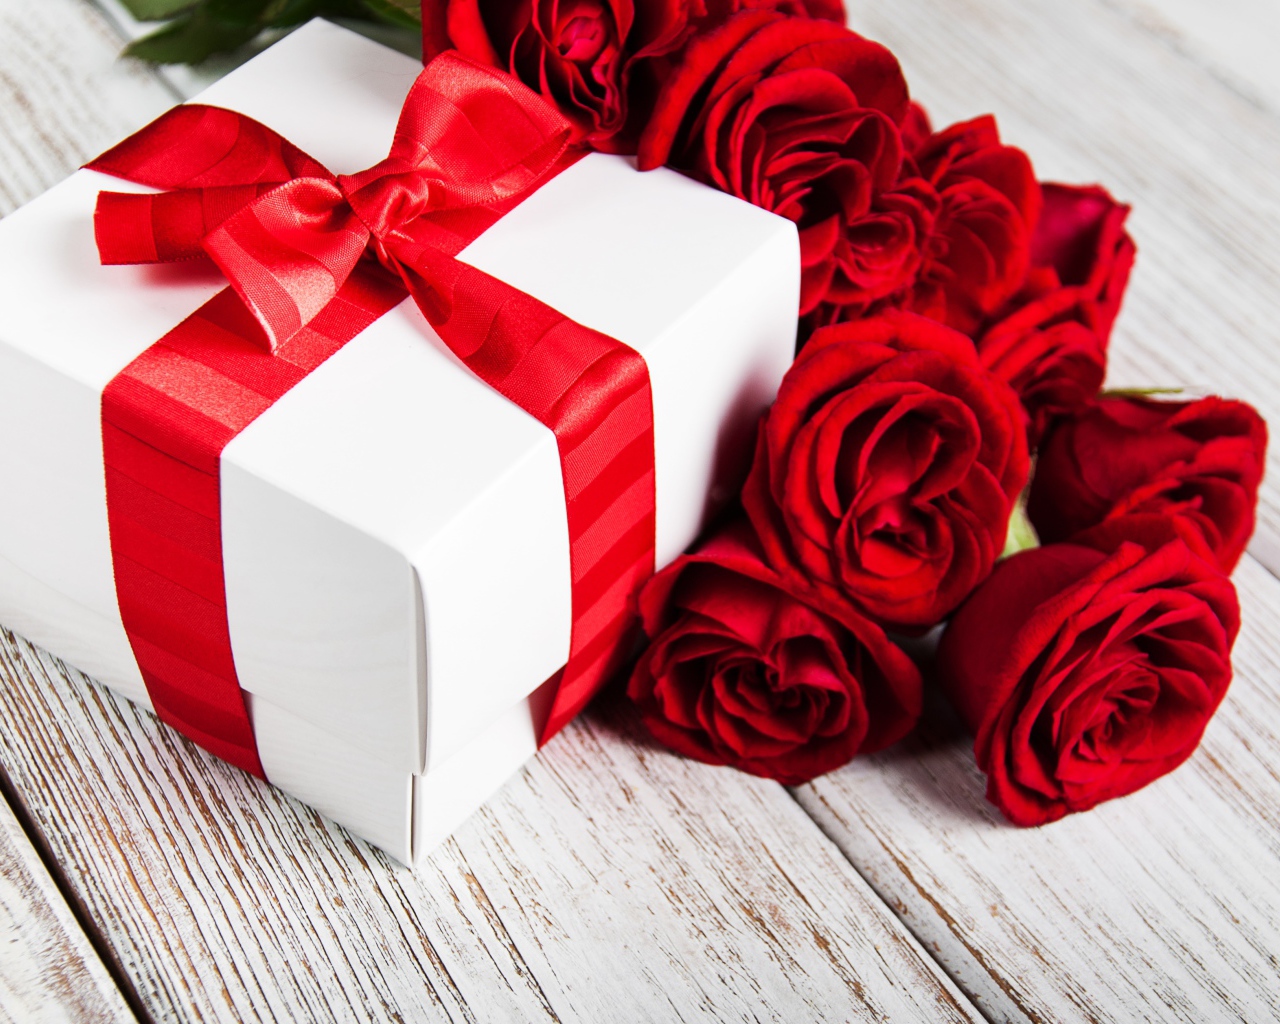 Красные розы на столе с подарком с красной лентой